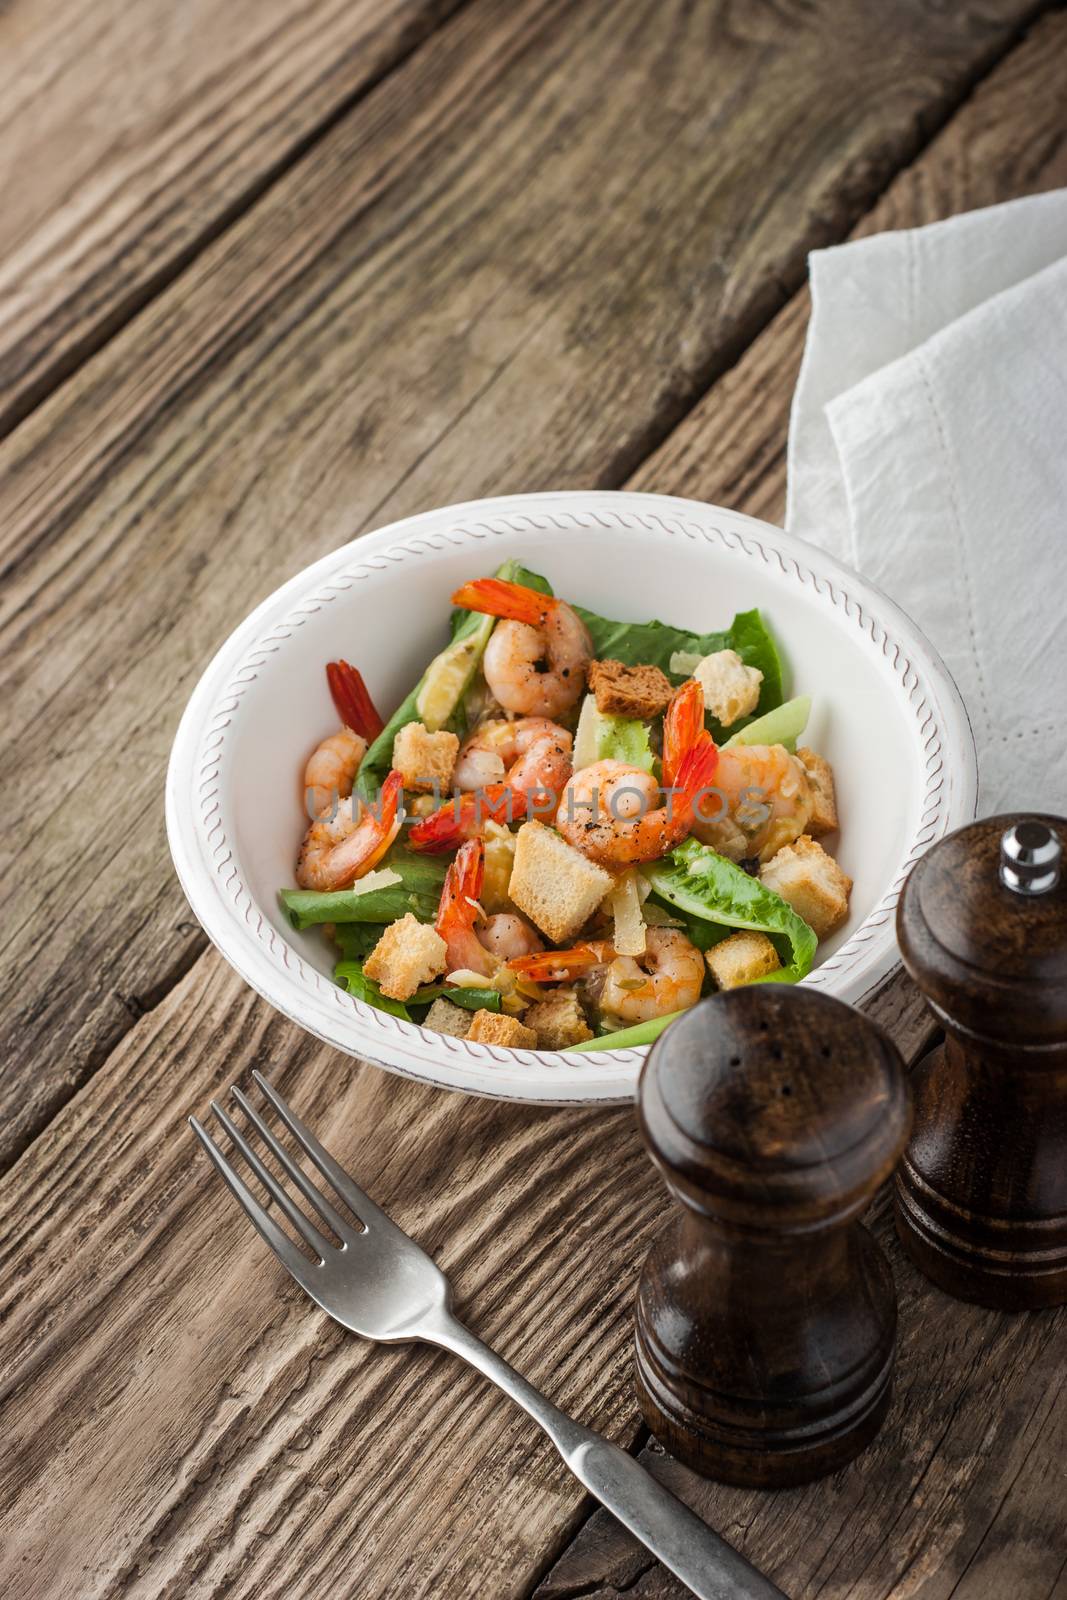 Shrimps Caesar salad with fork by Deniskarpenkov